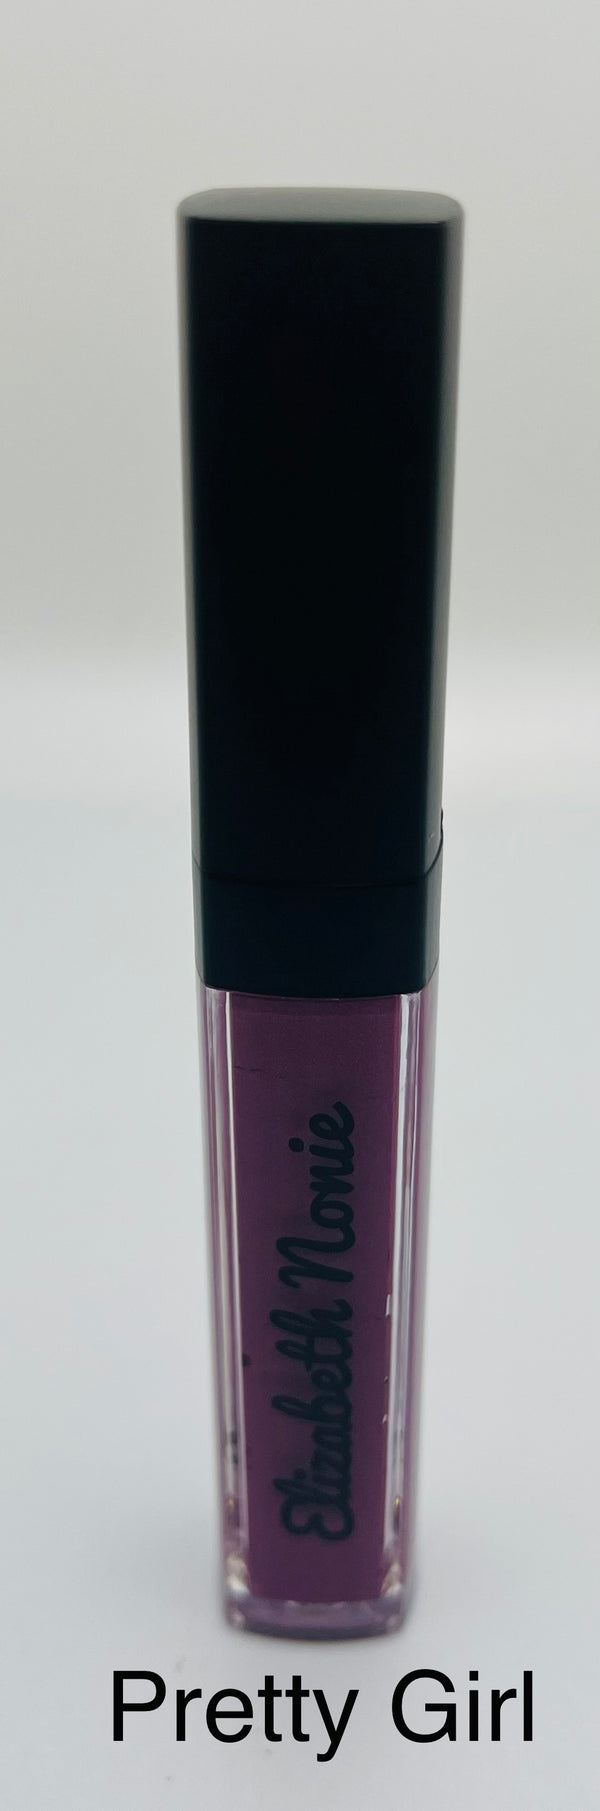 Pretty Girl Matte Liquid Lipstick